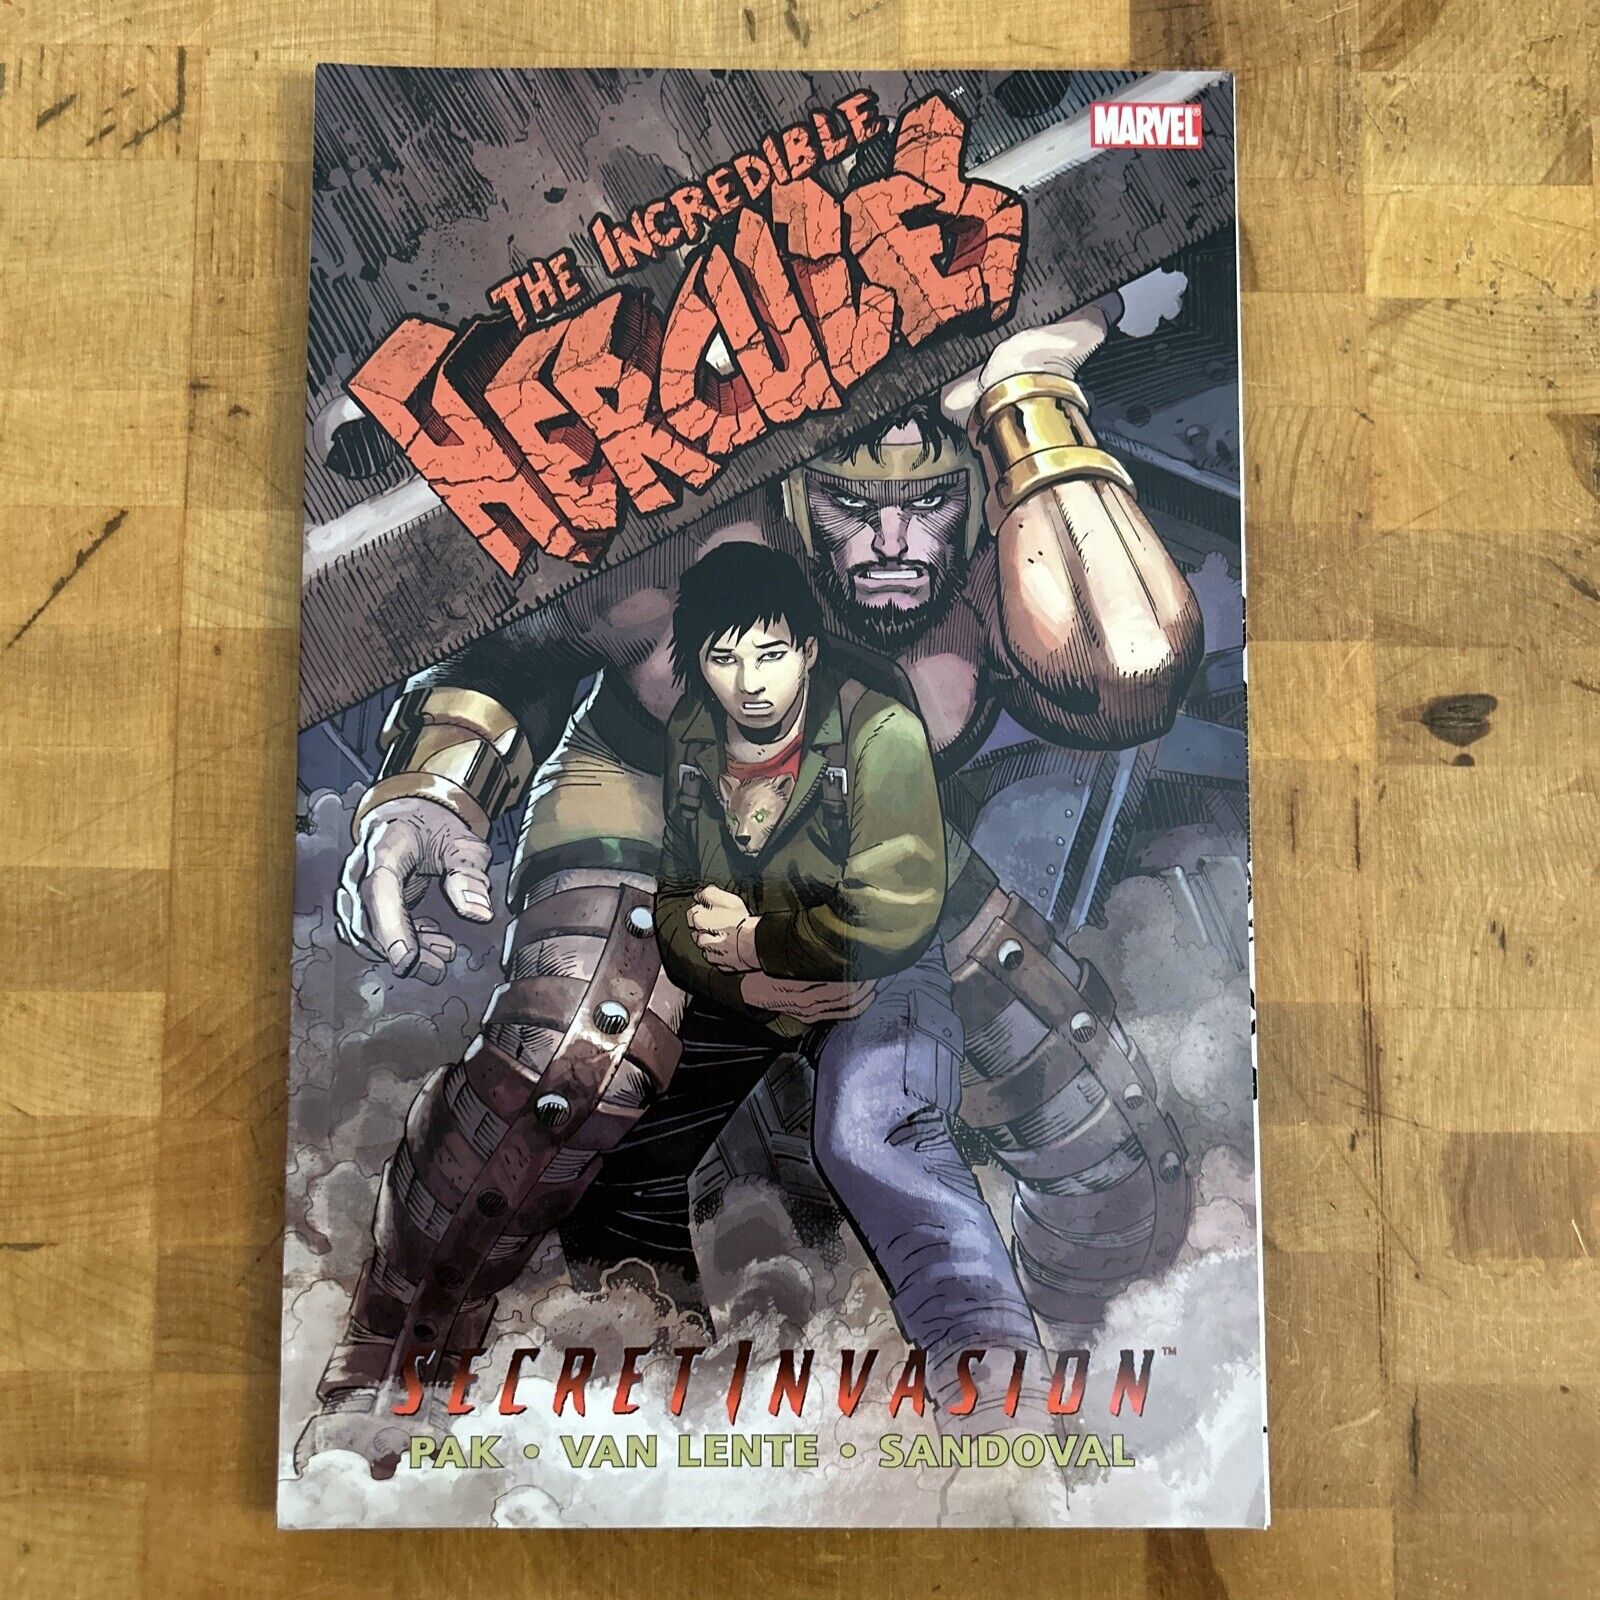 Incredible Hercules: Secret Invasion (Marvel Comics 2009)